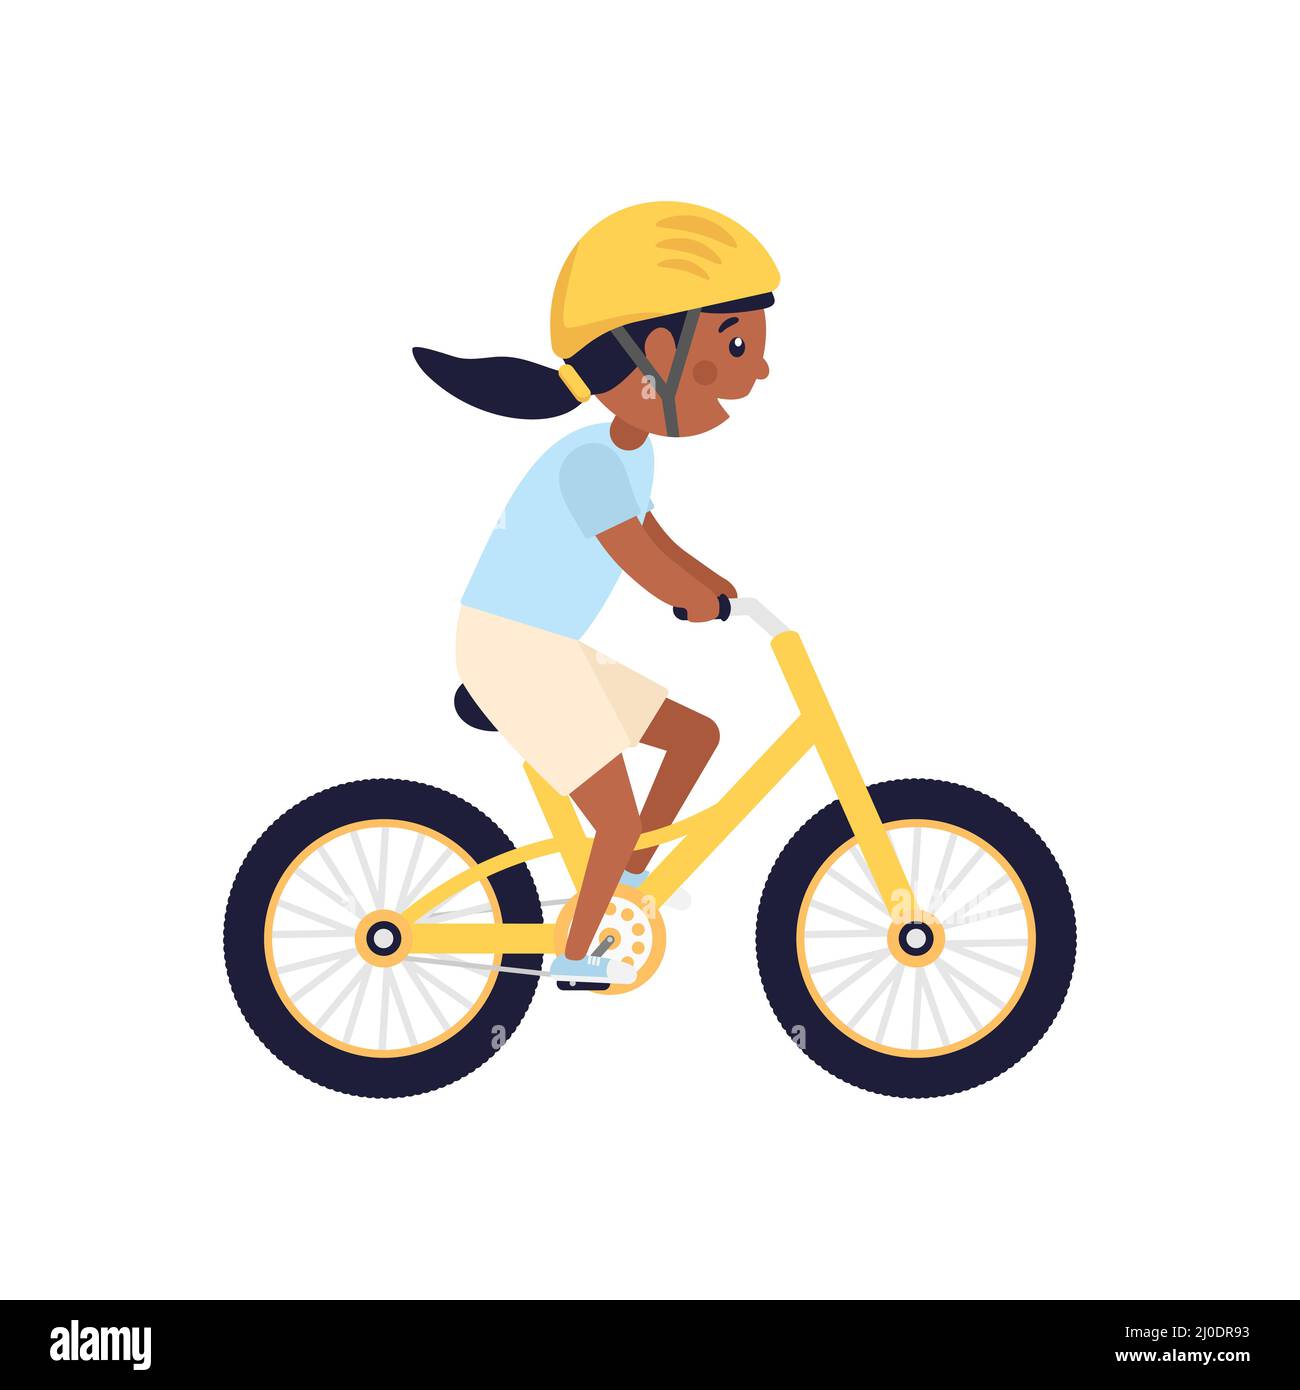 Nettes glückliches amerikanisches Mädchen mit gelbem Helm Fahrrad fahren. Afrikanisches Kind fährt modernes Fahrrad. Stock Vektor